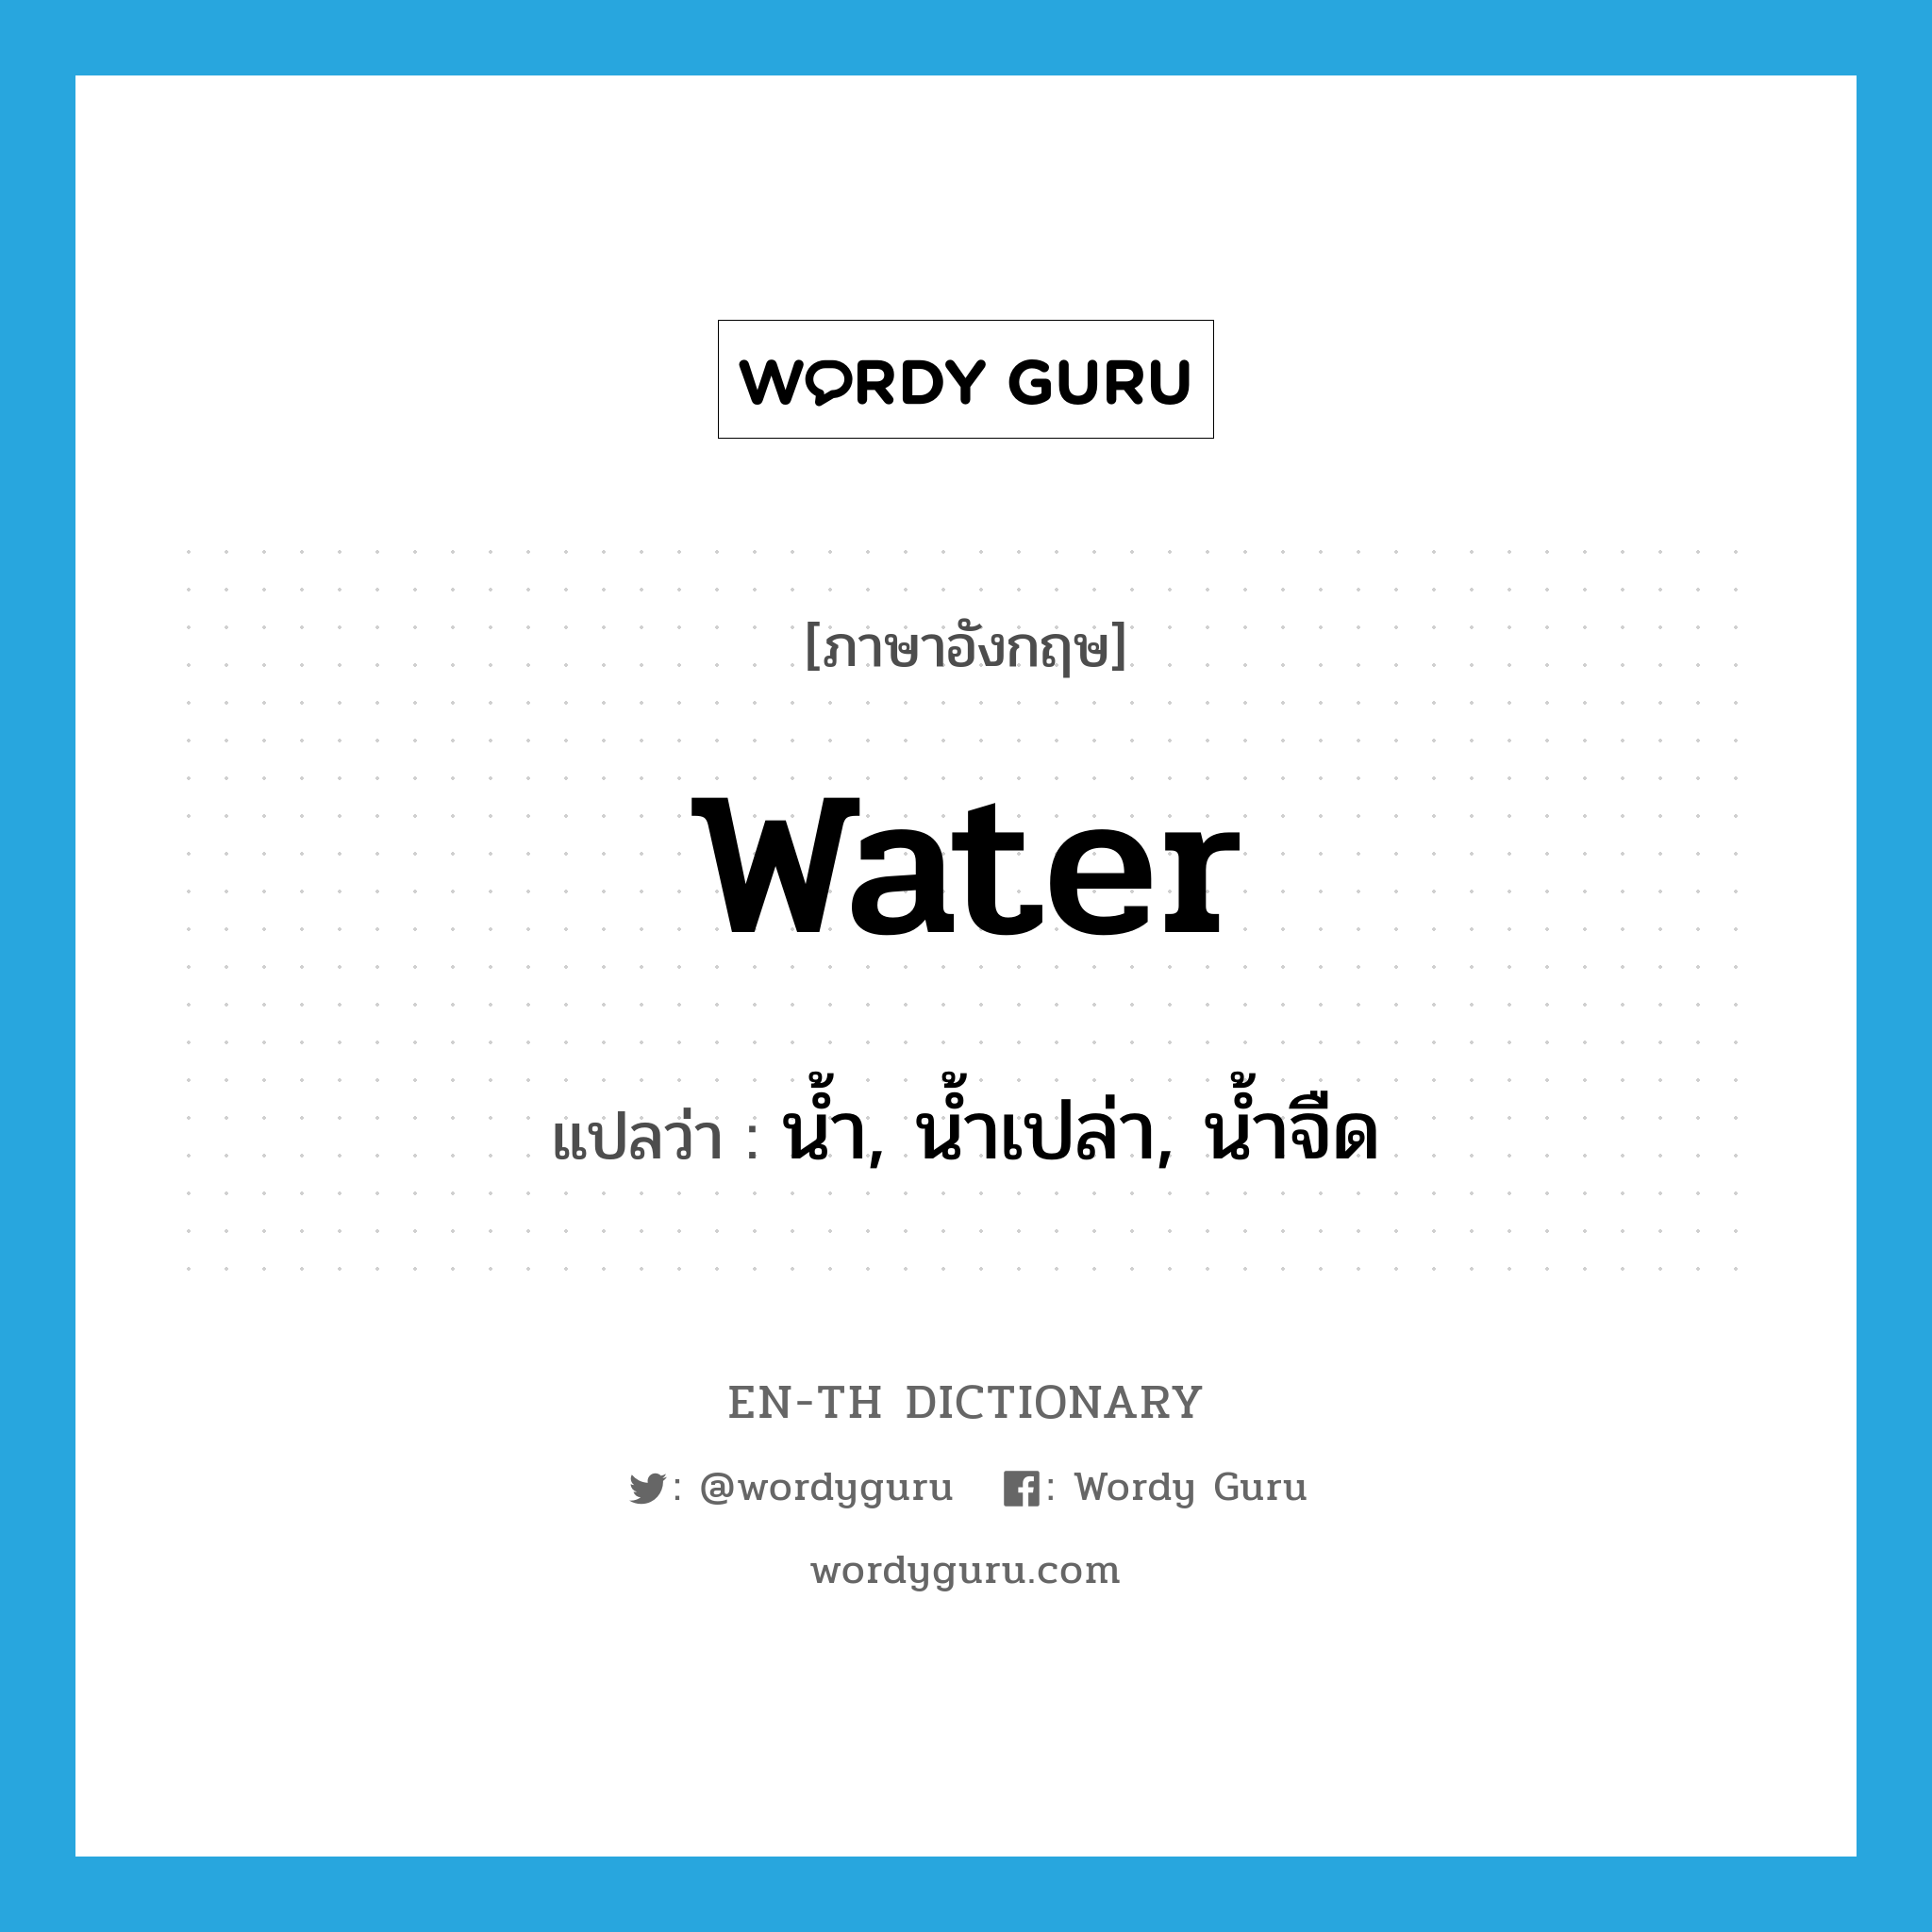 น้ำ, น้ำเปล่า, น้ำจืด ภาษาอังกฤษ?, คำศัพท์ภาษาอังกฤษ น้ำ, น้ำเปล่า, น้ำจืด แปลว่า water ประเภท N หมวด N